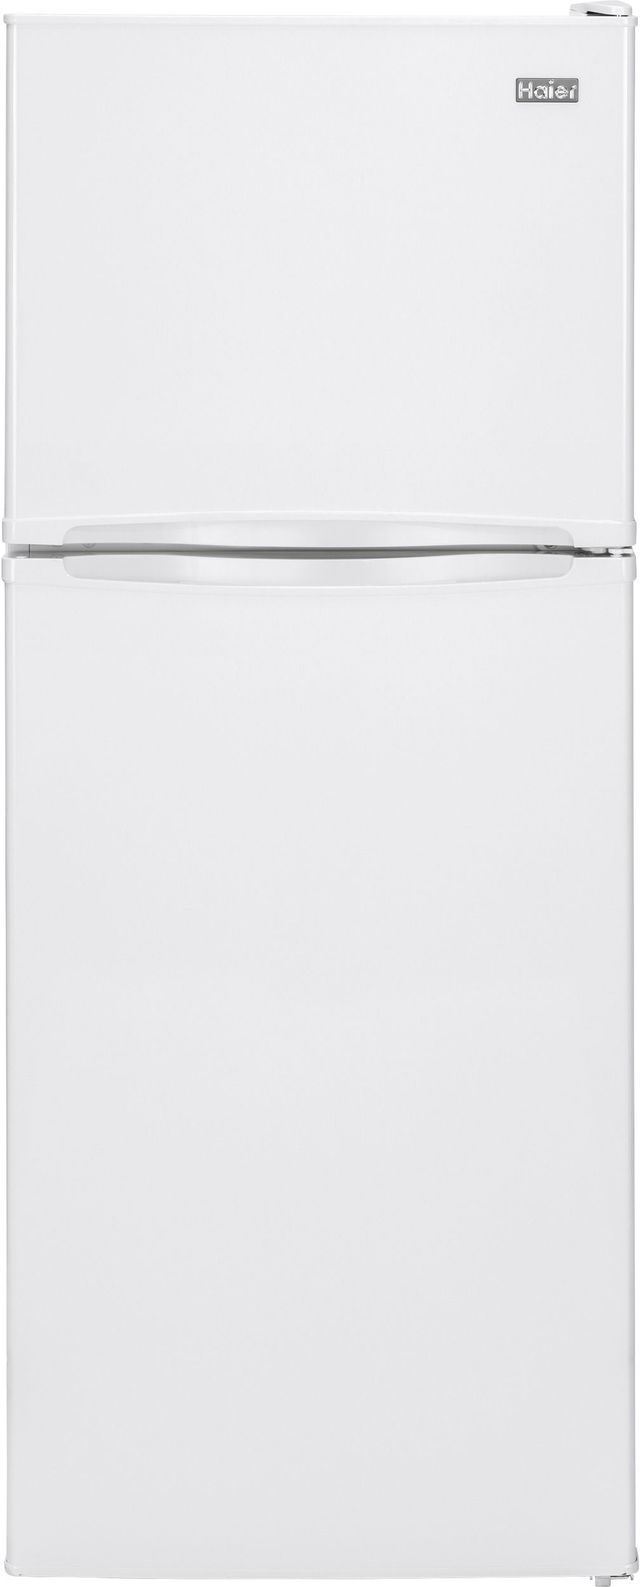 Haier 11.53 Cu. Ft. White Top Freezer Refrigerator 0